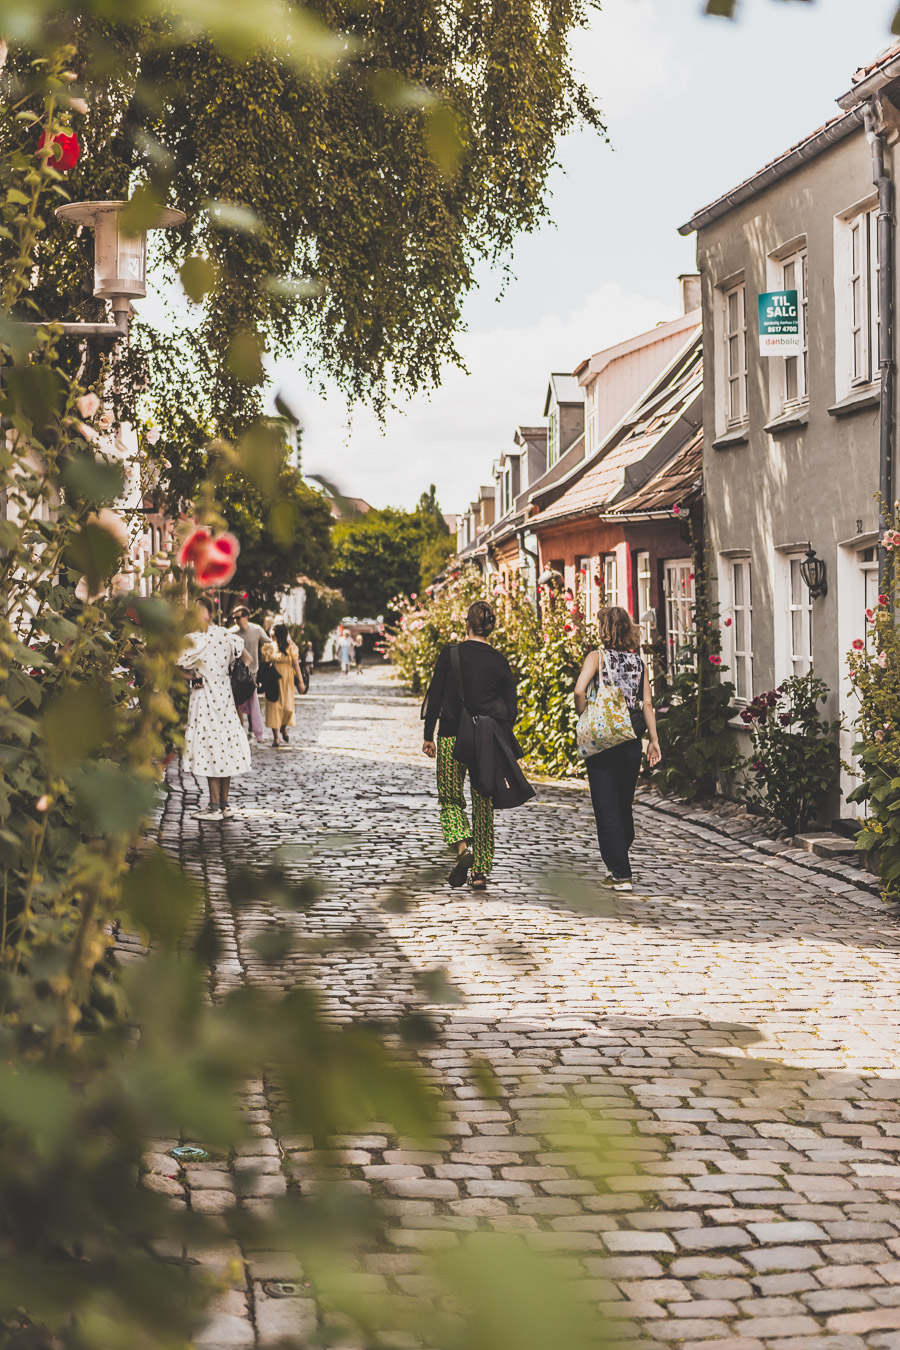 Møllestien street, la rue la plus jolie d’Aarhus